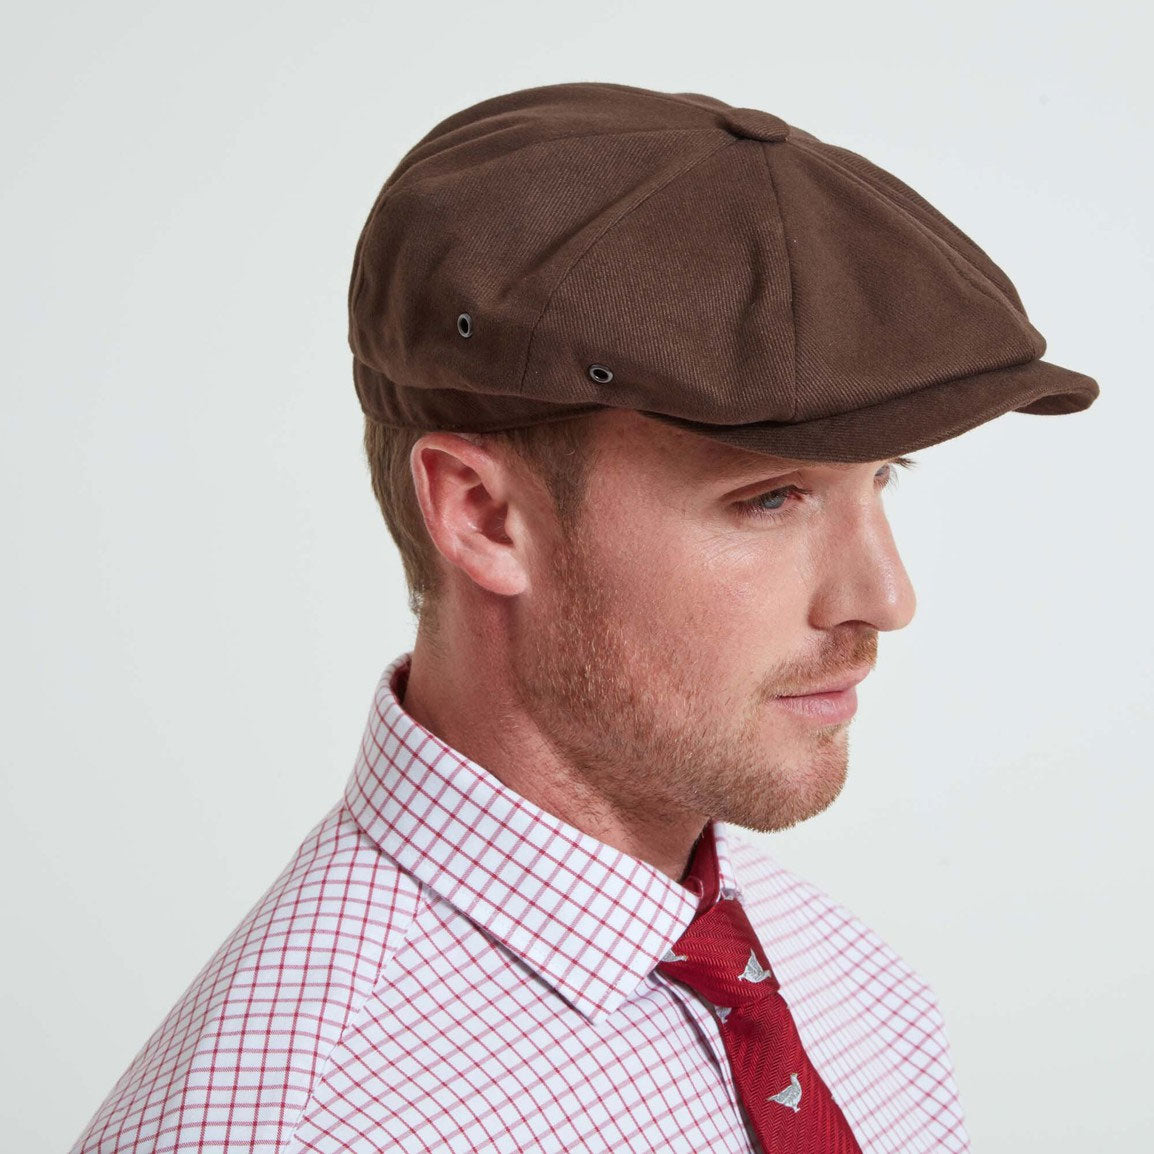 Men's Hats, Caps & Headwear | Millbry Hill